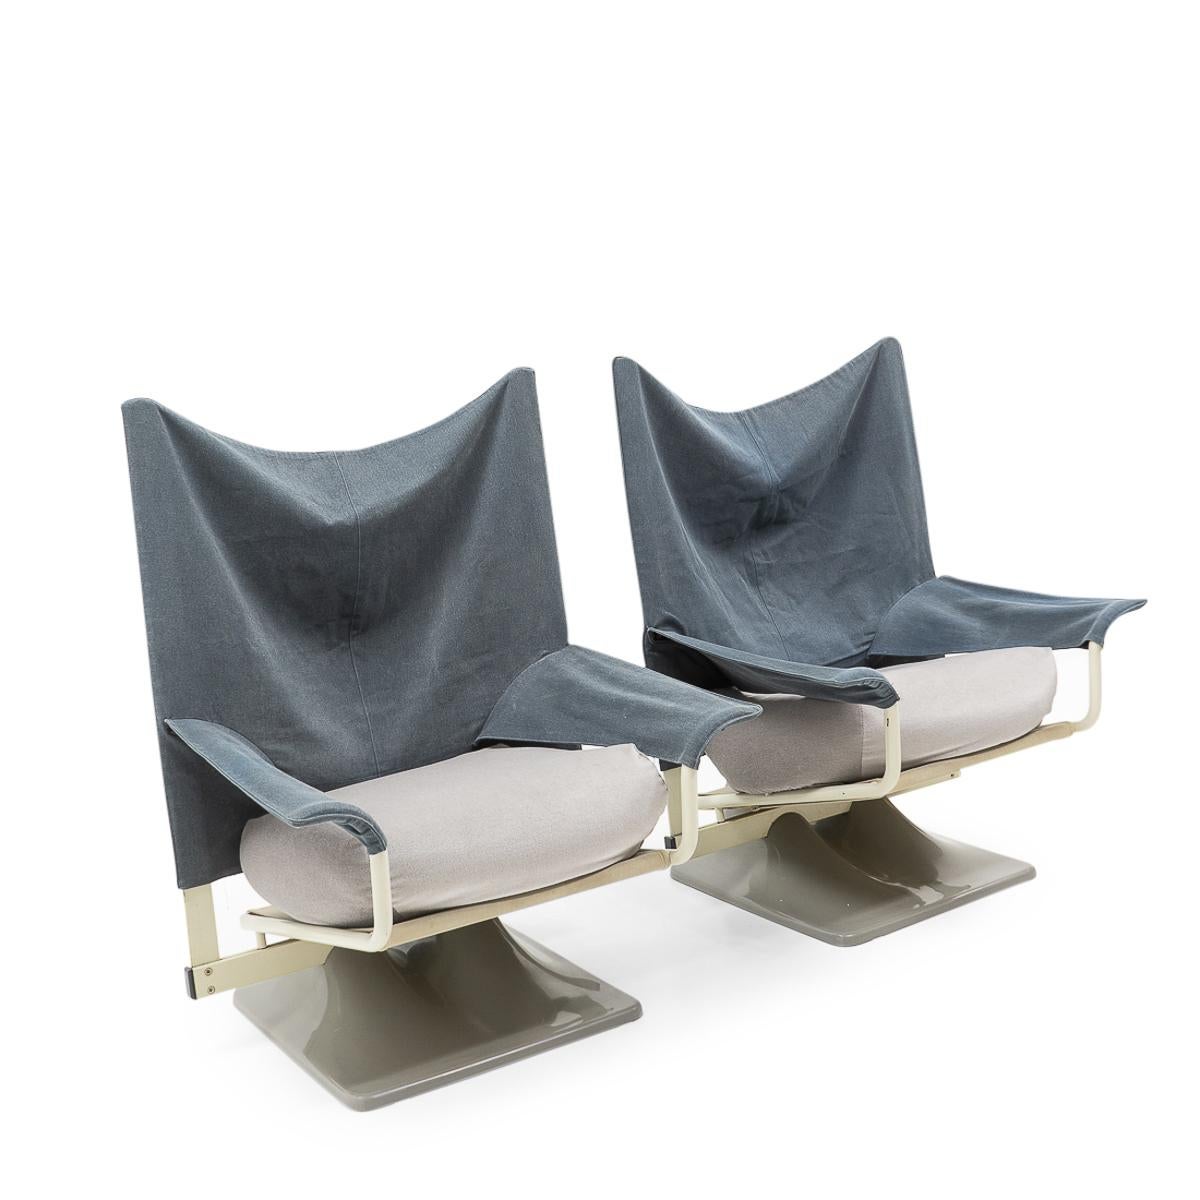 Fauteuil AEO conçu par Paolo Deganello (cofondateur d'Archizoom Italie) dans les années 1970, représentant son interprétation d'un fauteuil, utilisant pour l'époque des matériaux non conventionnels pour la construction d'une chaise longue.

Ces